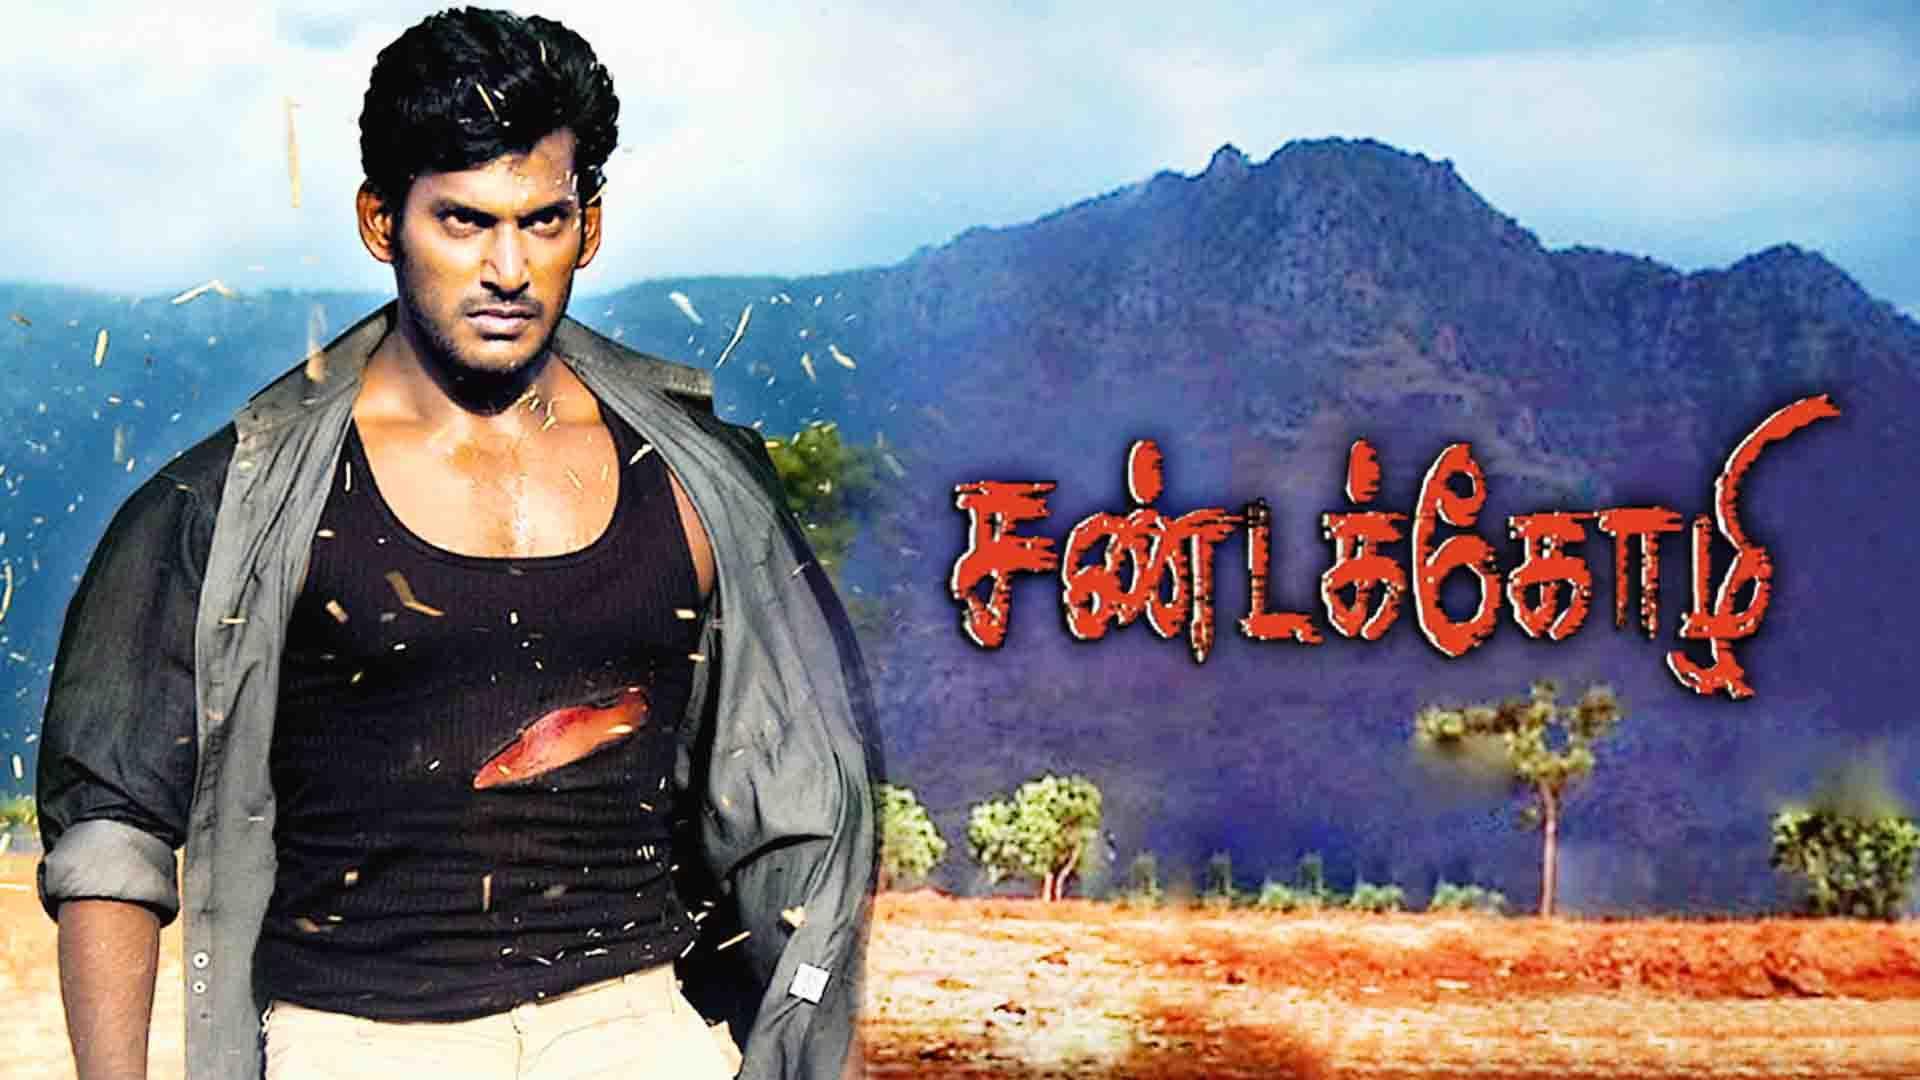 sandakoli 2 tamil movie full movie